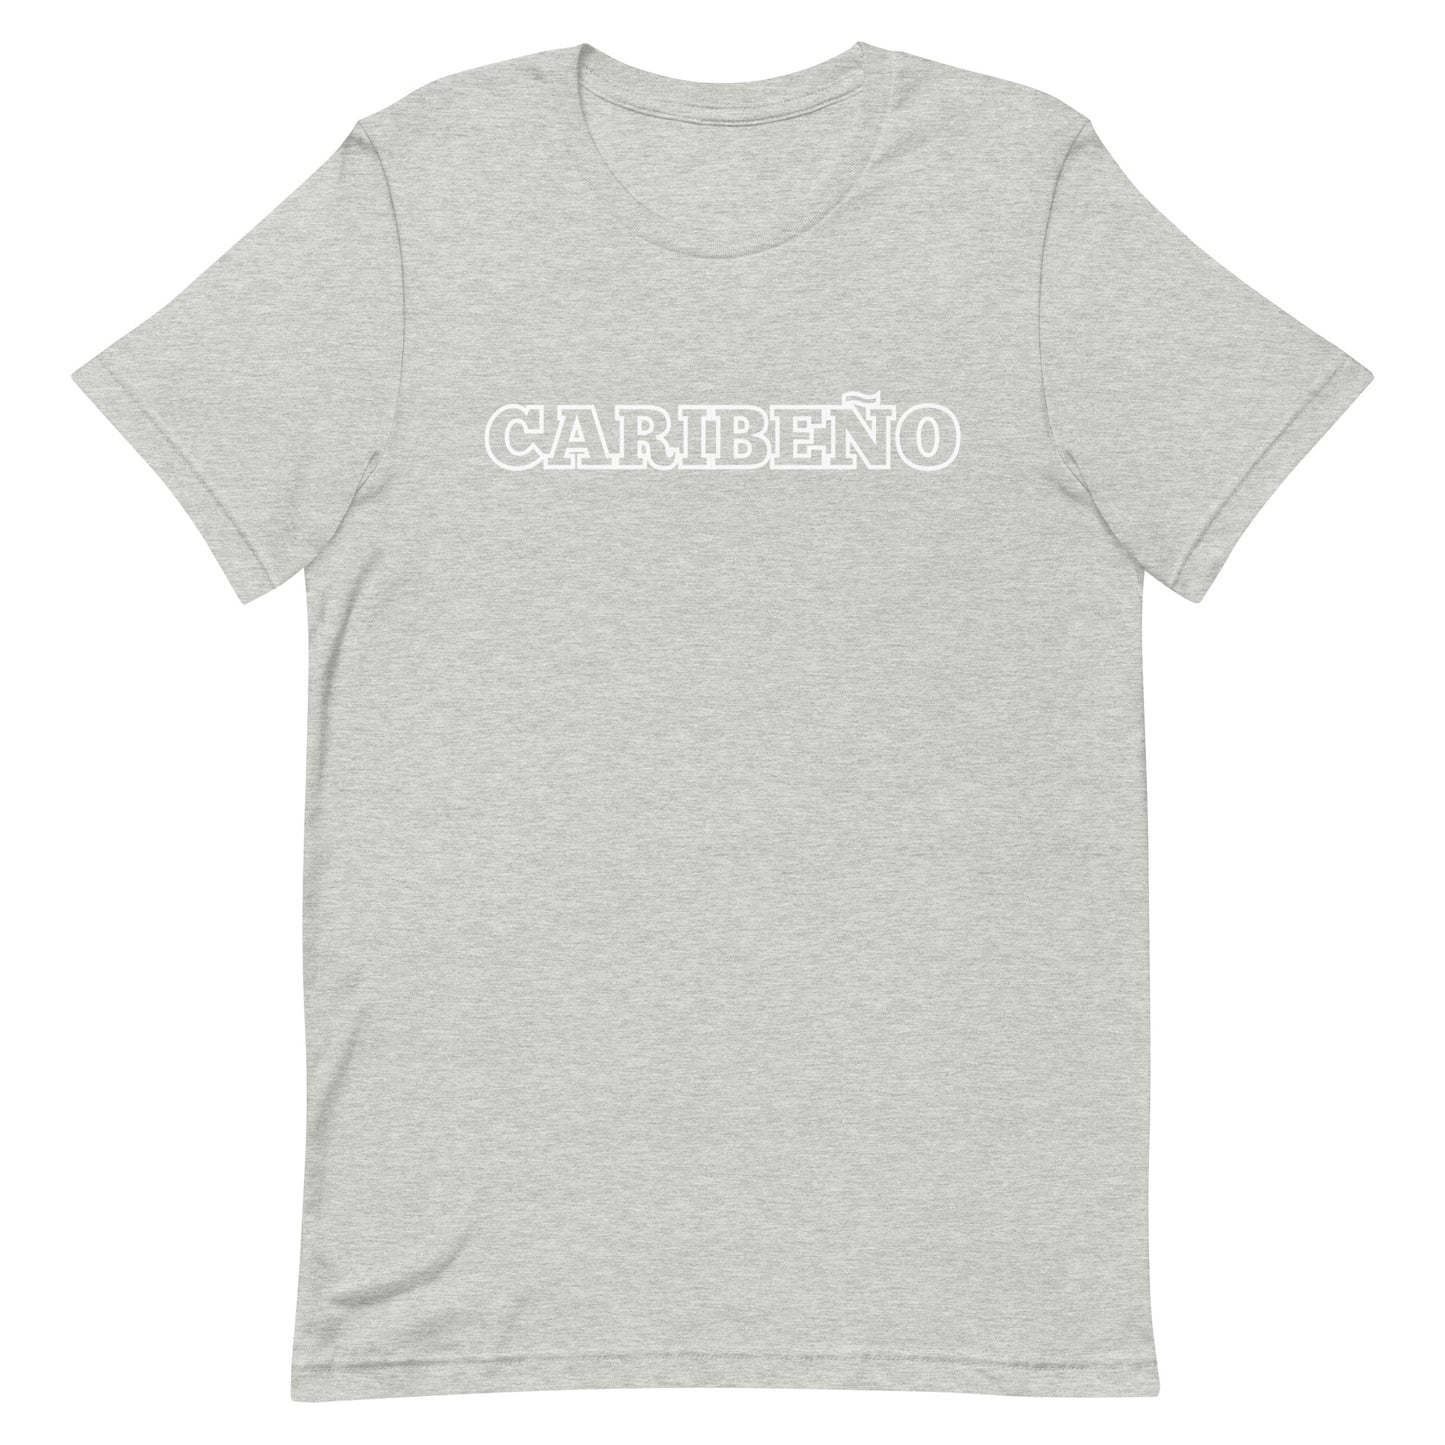 Caribeño T-shirt